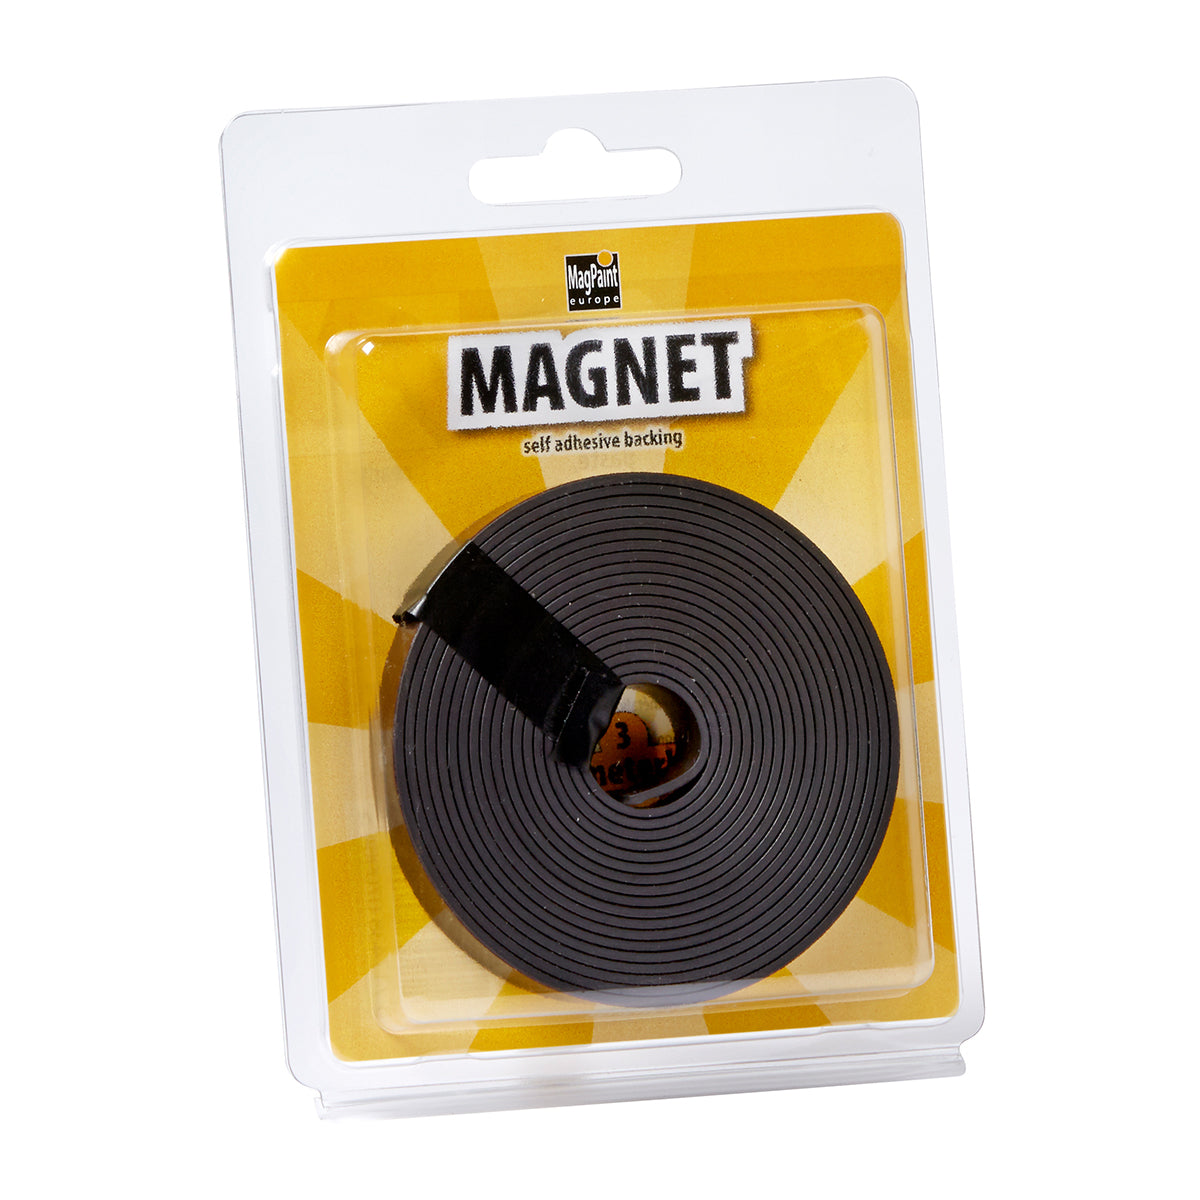 Self-adhesive Magnetic Tape